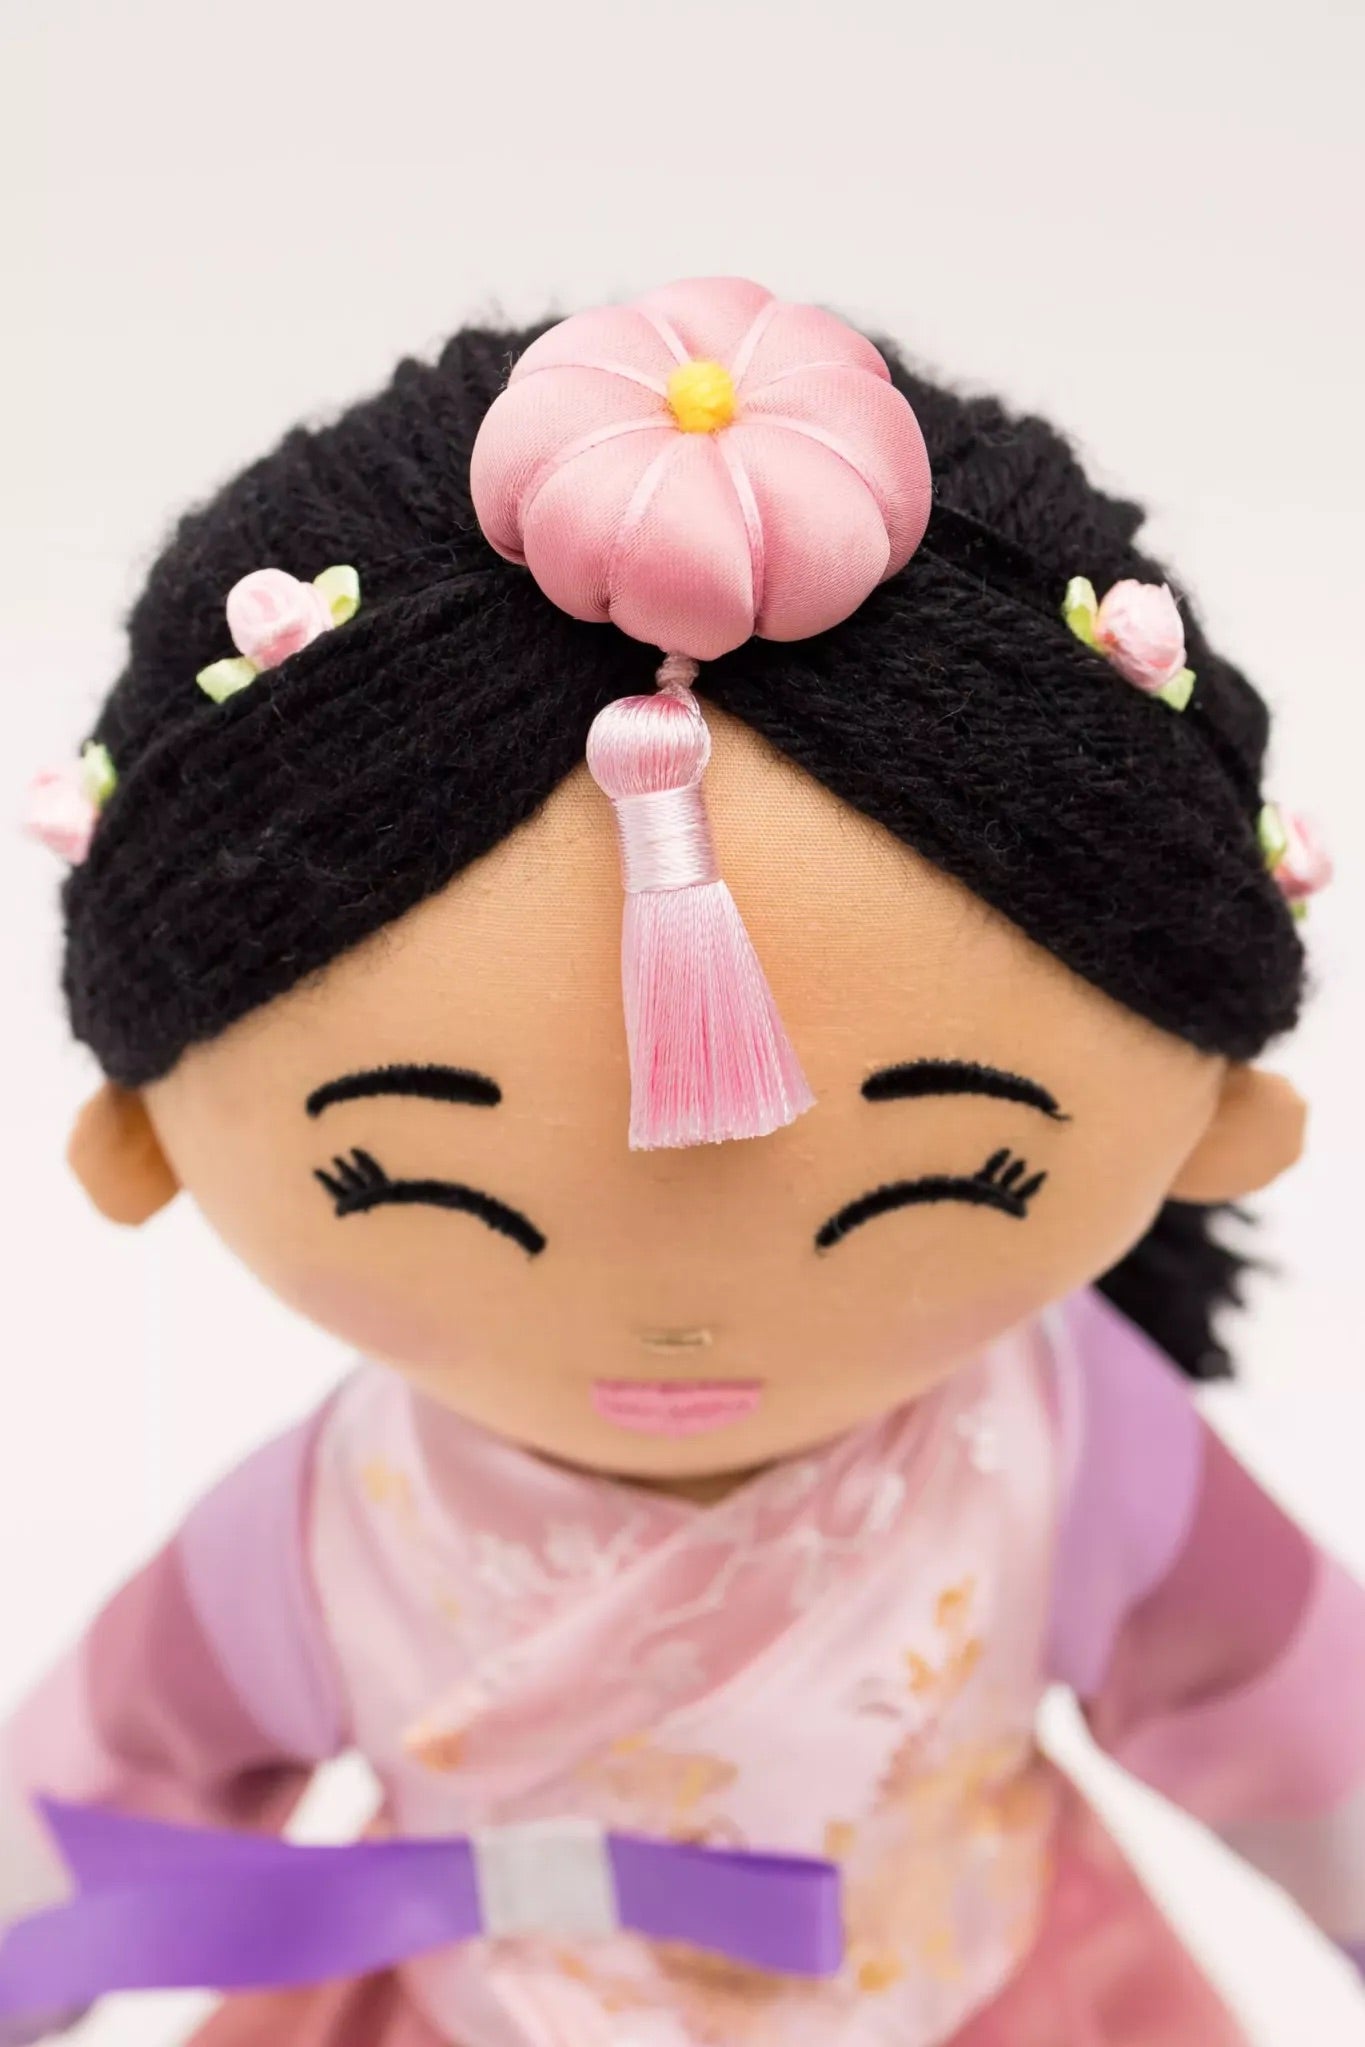 Korean 'Danbi' Cultural Doll